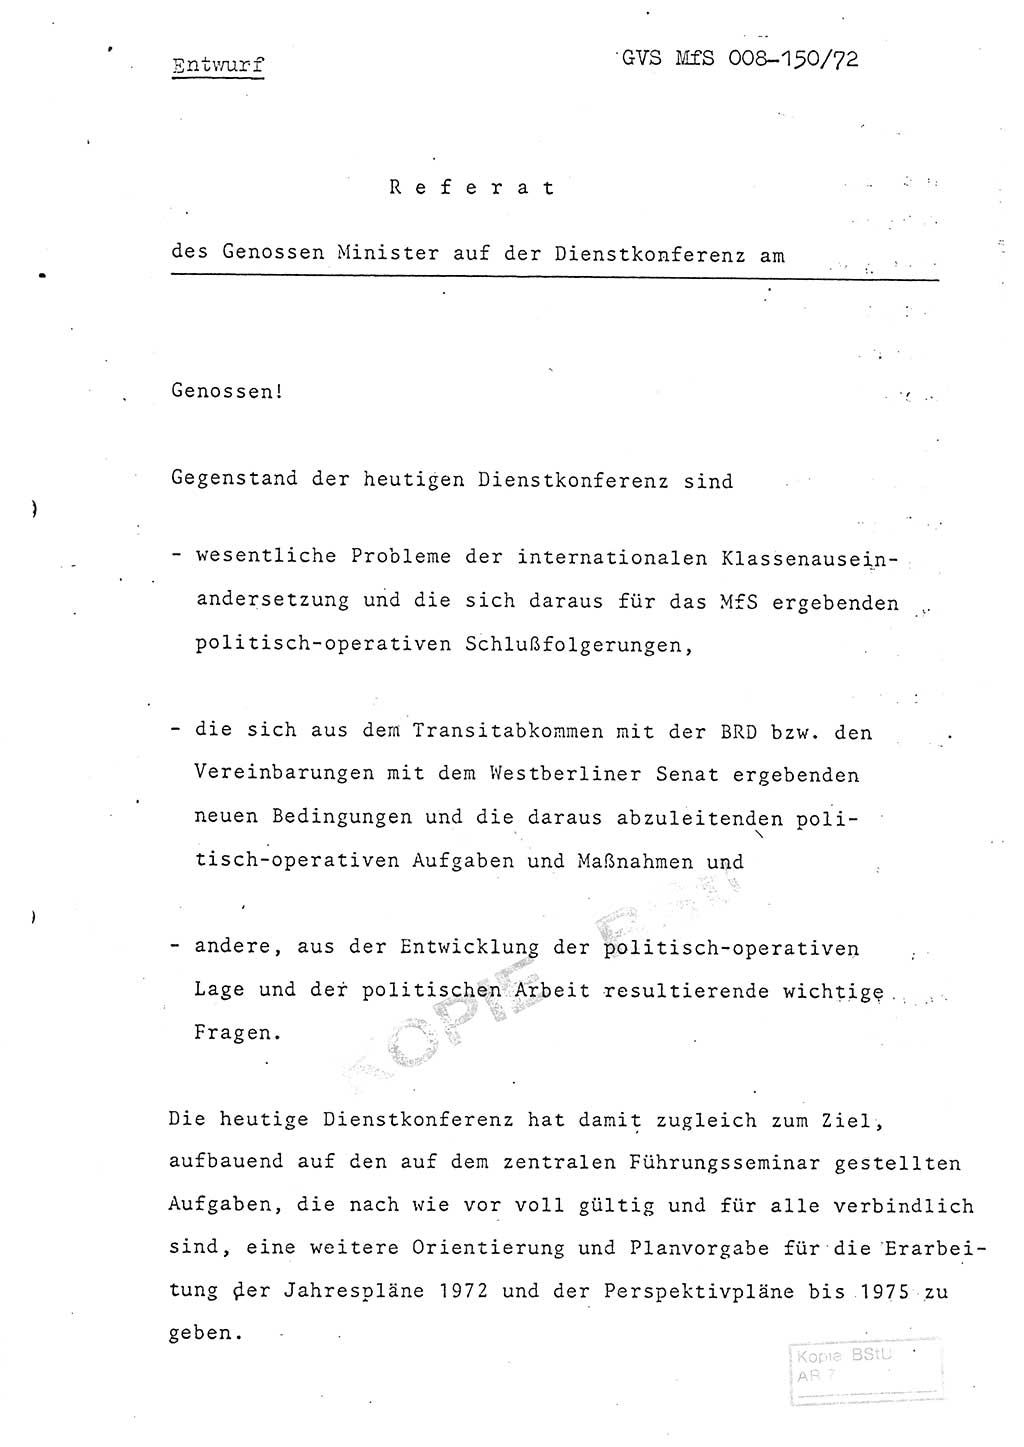 Referat (Entwurf) des Genossen Minister (Generaloberst Erich Mielke) auf der Dienstkonferenz 1972, Ministerium für Staatssicherheit (MfS) [Deutsche Demokratische Republik (DDR)], Der Minister, Geheime Verschlußsache (GVS) 008-150/72, Berlin 25.2.1972, Seite 1 (Ref. Entw. DK MfS DDR Min. GVS 008-150/72 1972, S. 1)